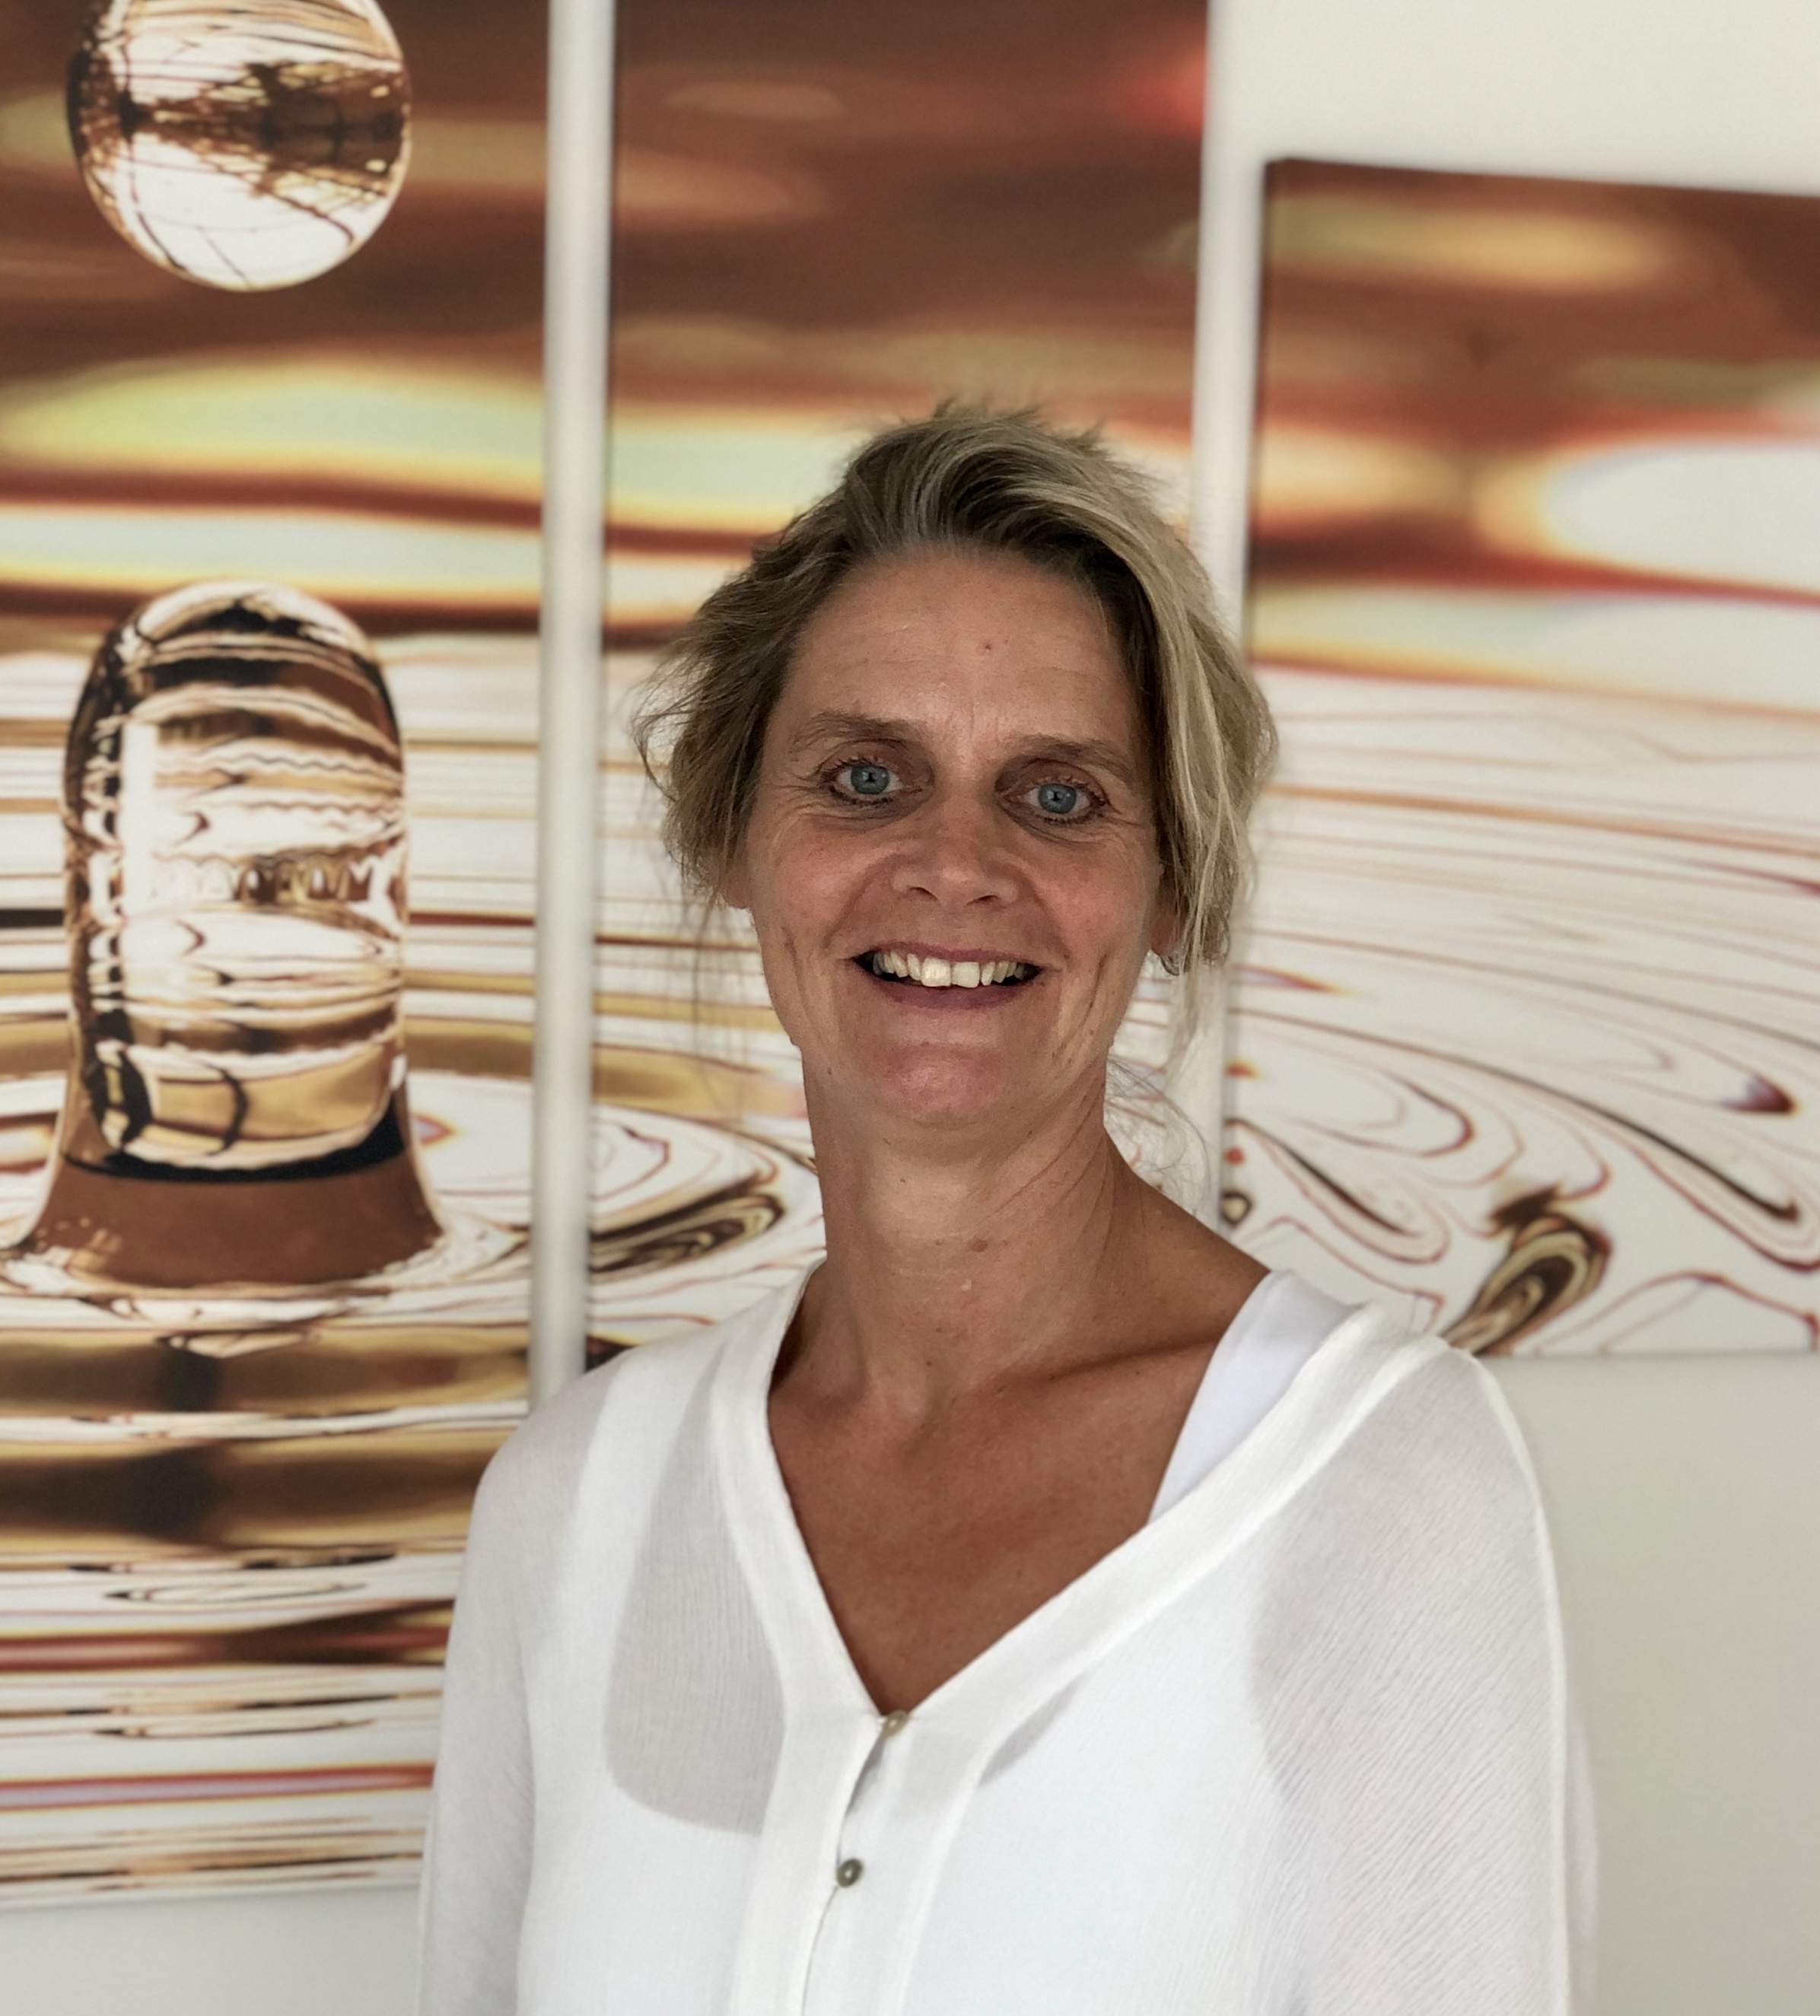 Yvonne Huinink (lid NVA) behandelt al ruim 20 jaar zeer succesvol met acupunctuur.  Vanaf 1998 startte ze met behandelingen Acupunctuur Lichtenvoorde - Praktijk Acupunctuur Loijer. Ze heeft haar eigen praktijk en staat voor Acupunctuur Dry Needling DryneedlingDoetinchem.